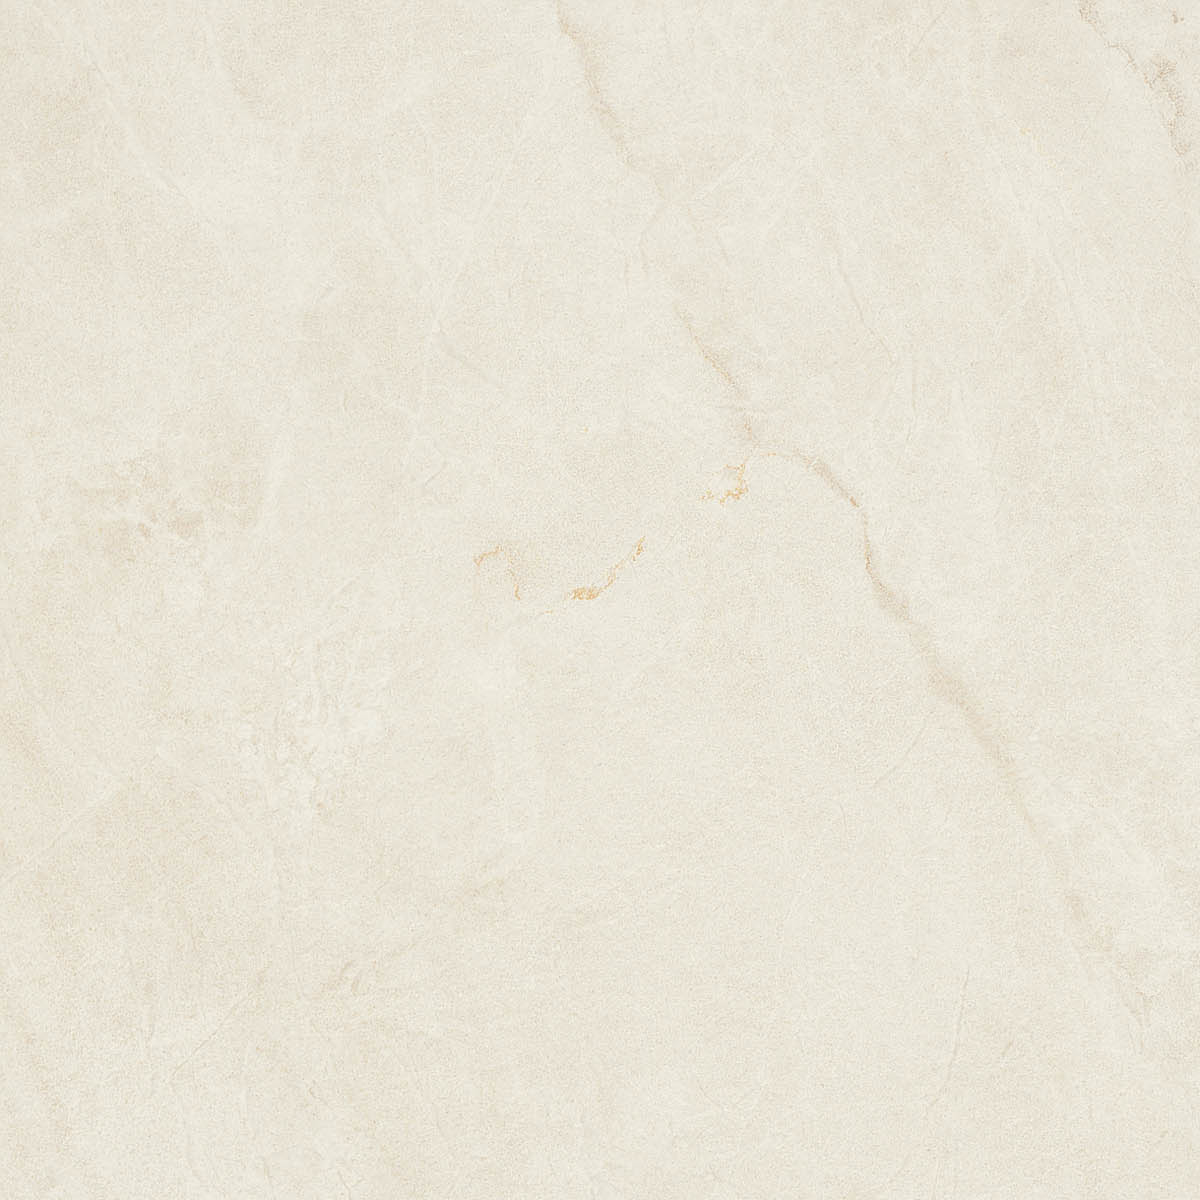 Imola Muse Bianco Lappato Flat Glossy Bianco 149469 gelaeppt glatt glaenzend 60x60cm rektifiziert 10,5mm